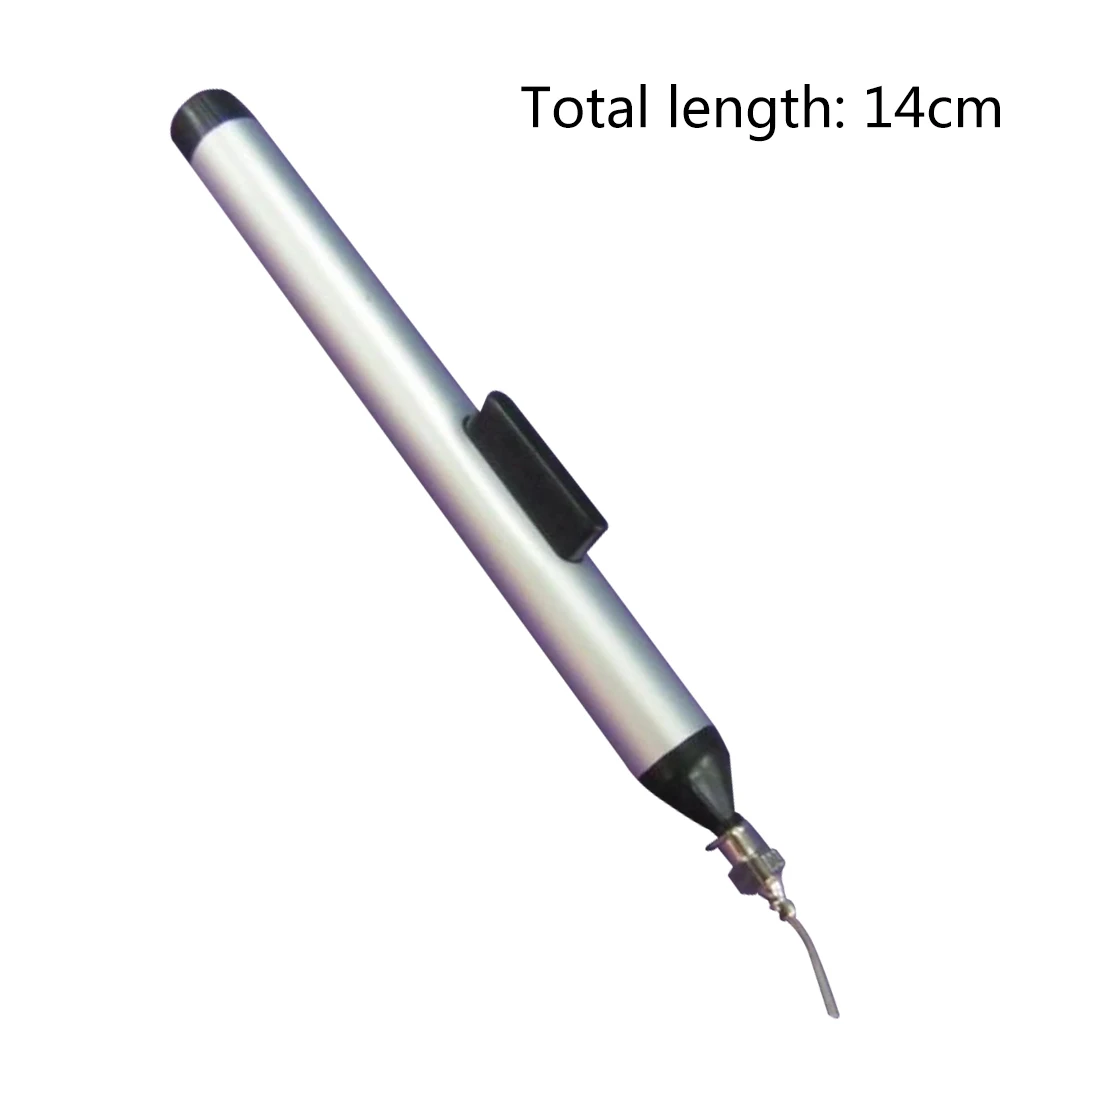 Припой распайки вакуумное всасывание ручка насос присоска IC SMD Пинцет палочки инструмент для удаления